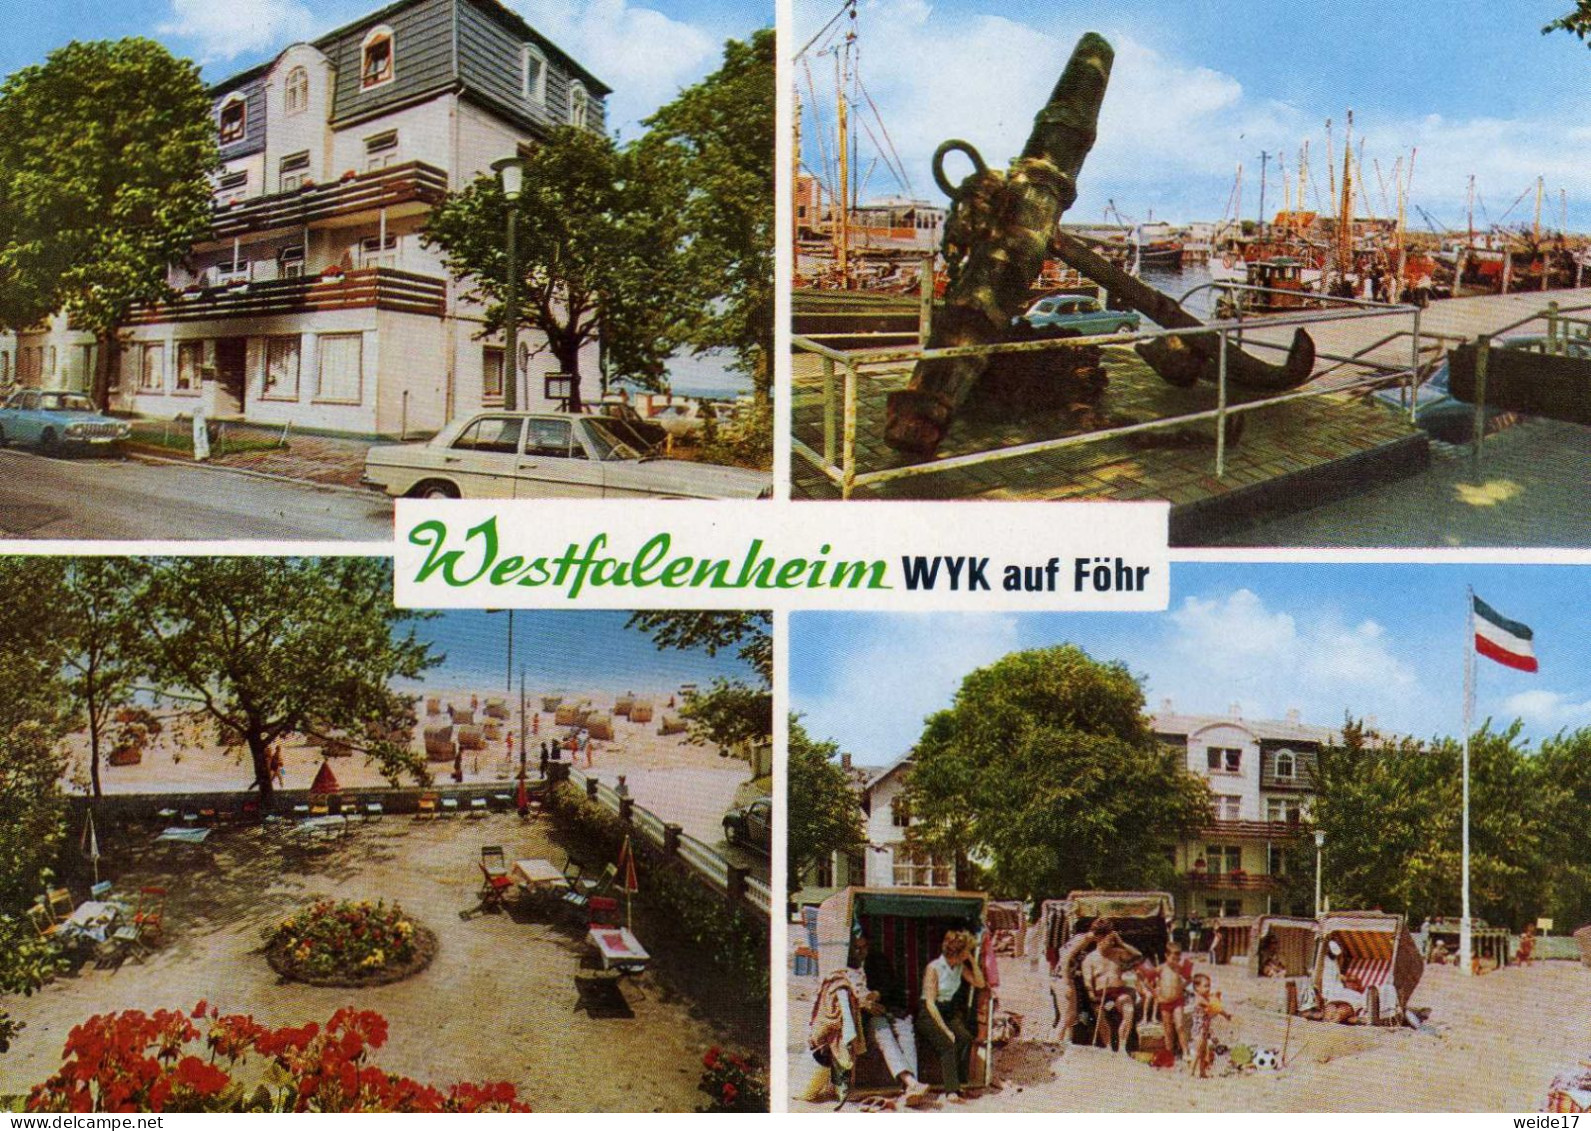 05194 - Nordseebad WYK Auf Föhr - MBK Vom Westfalenheim - Föhr